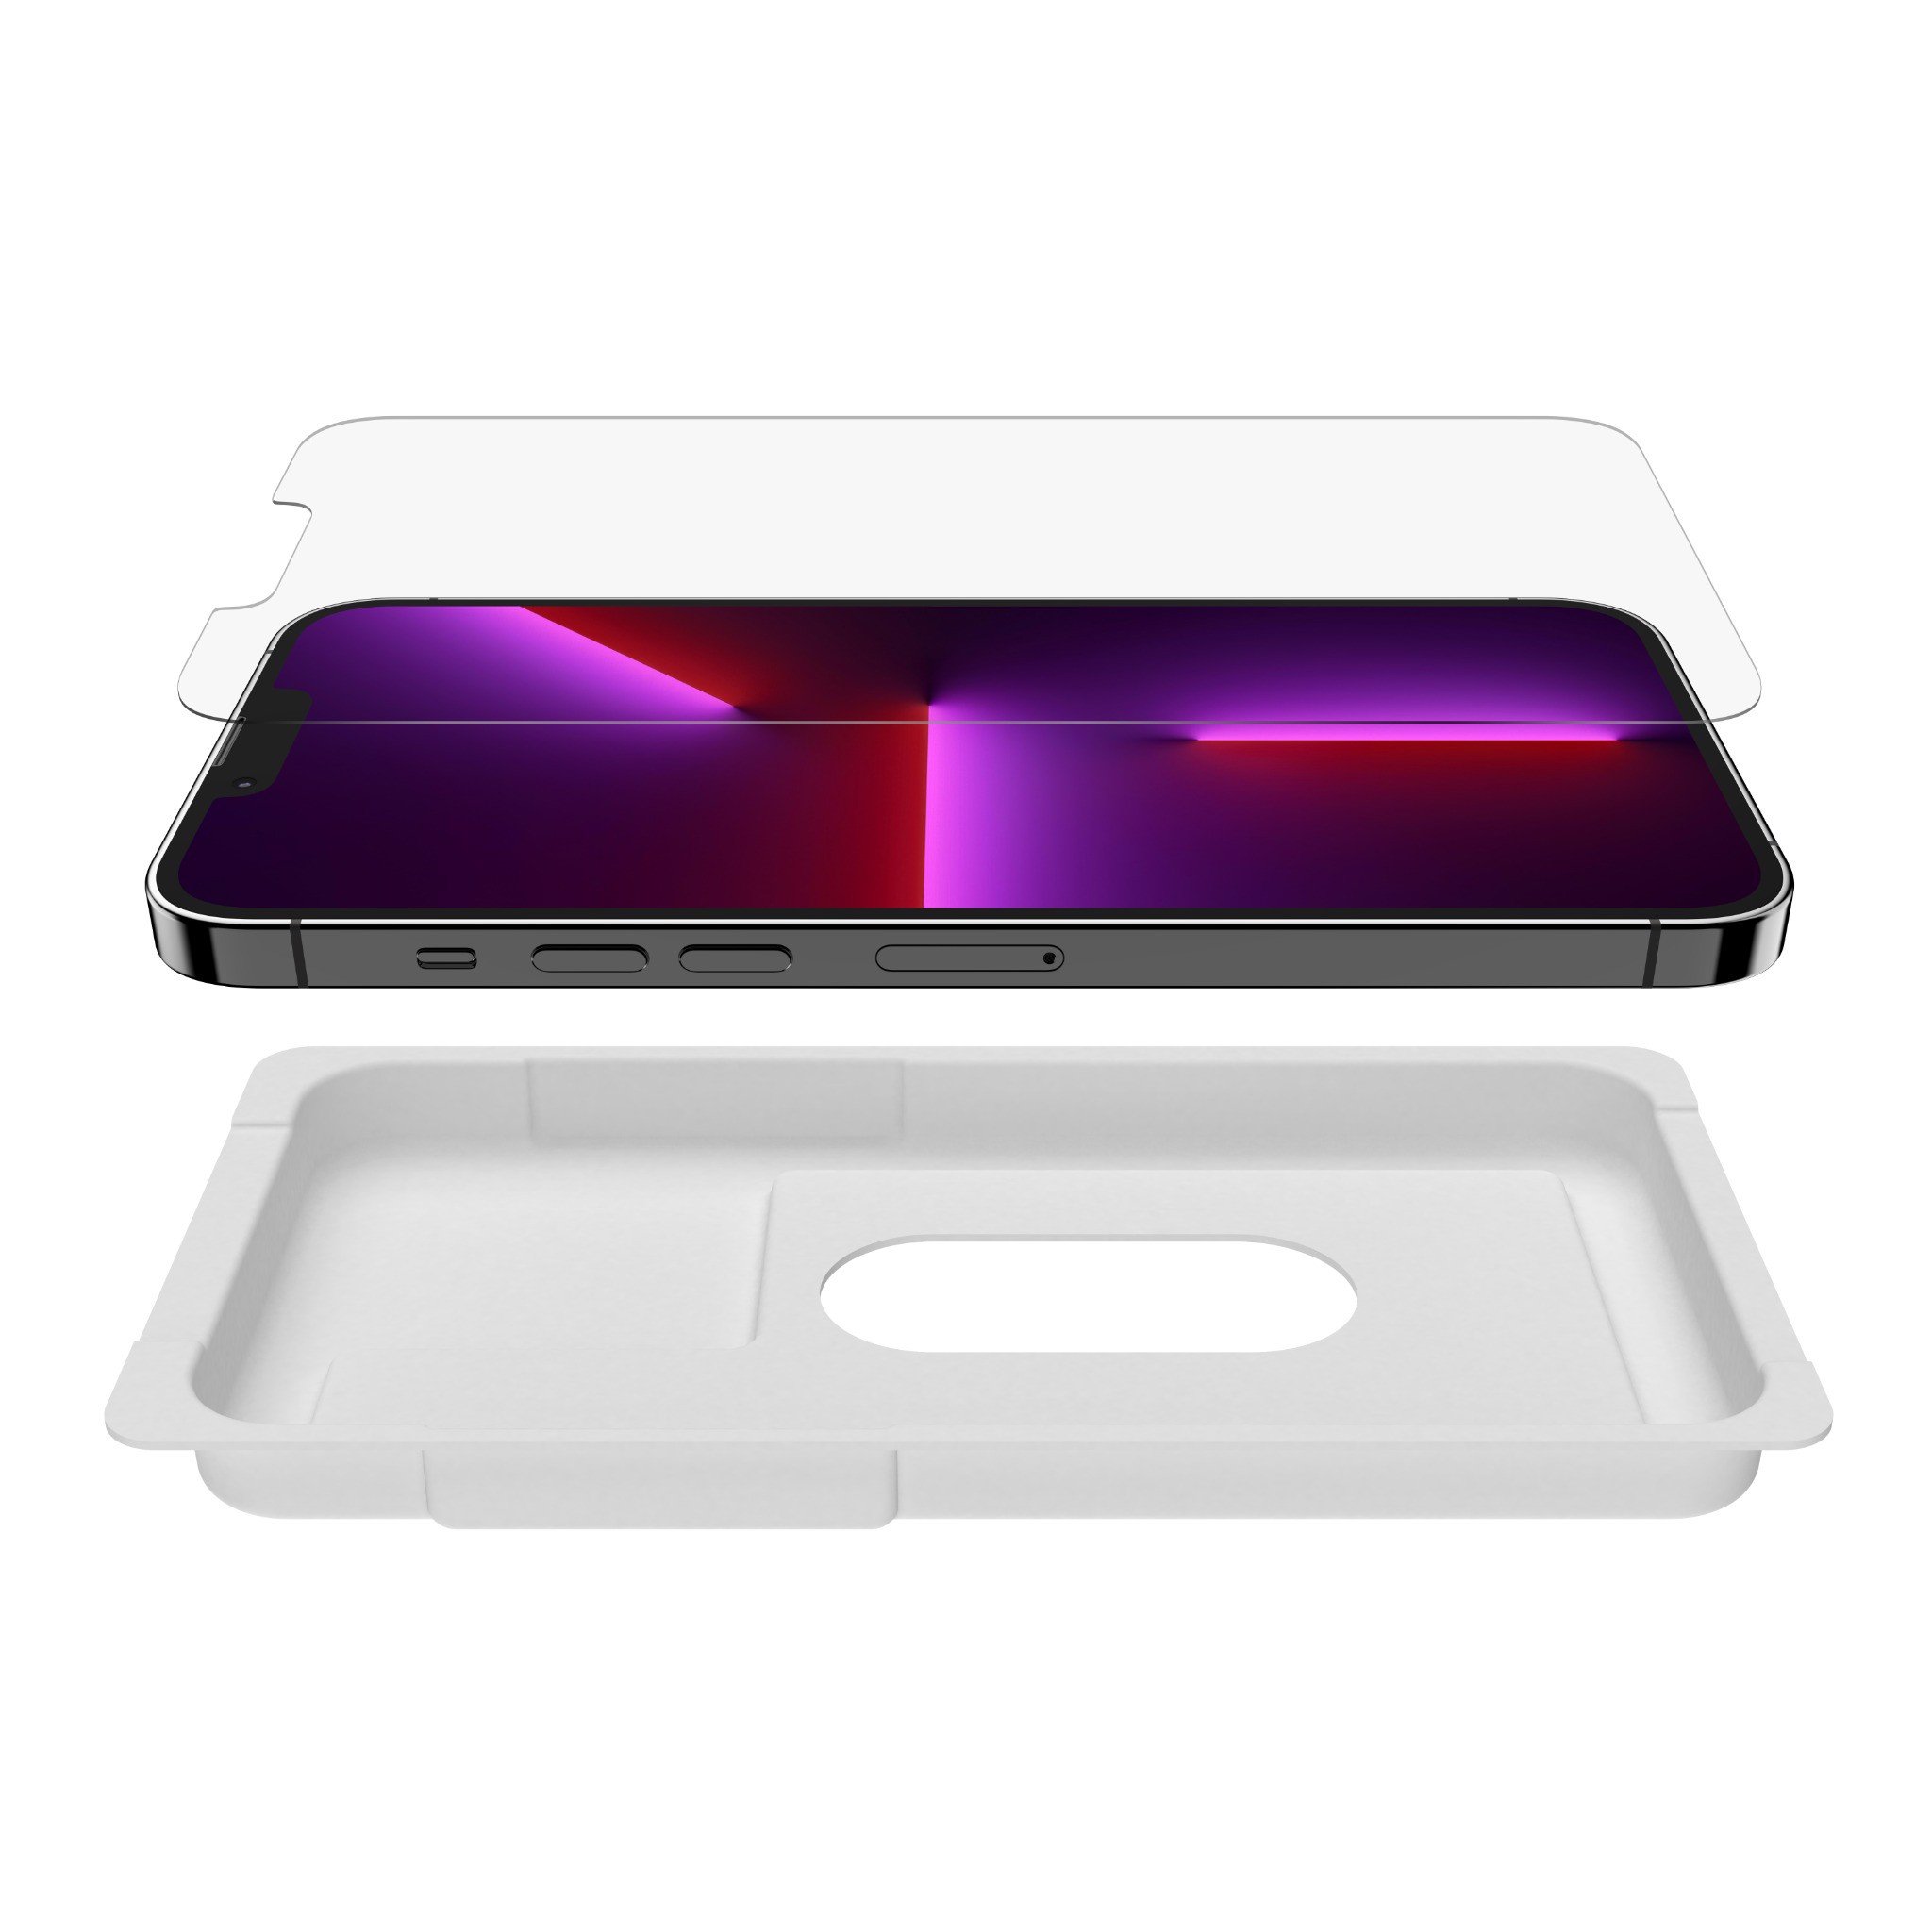 Miếng dán màn hình kháng khuẩn SCREENFORCE Belkin cho iPhone các dòng iPhone 13 - Hàng chính hãng